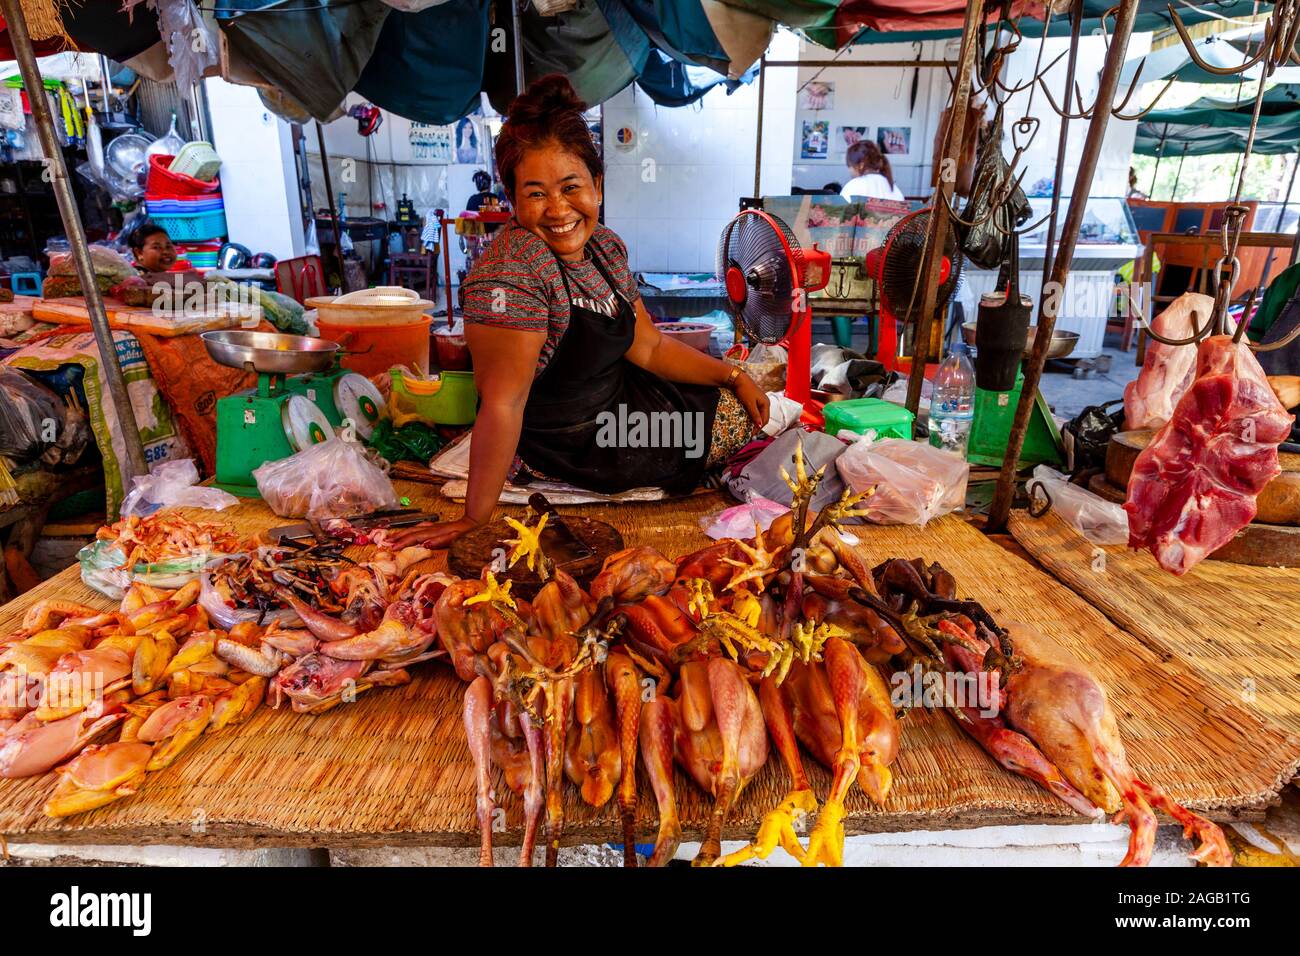 Une femme vend des viandes fraîches au marché Phsar Chas (vieux marché) Phnom Penh, Cambodge. Banque D'Images